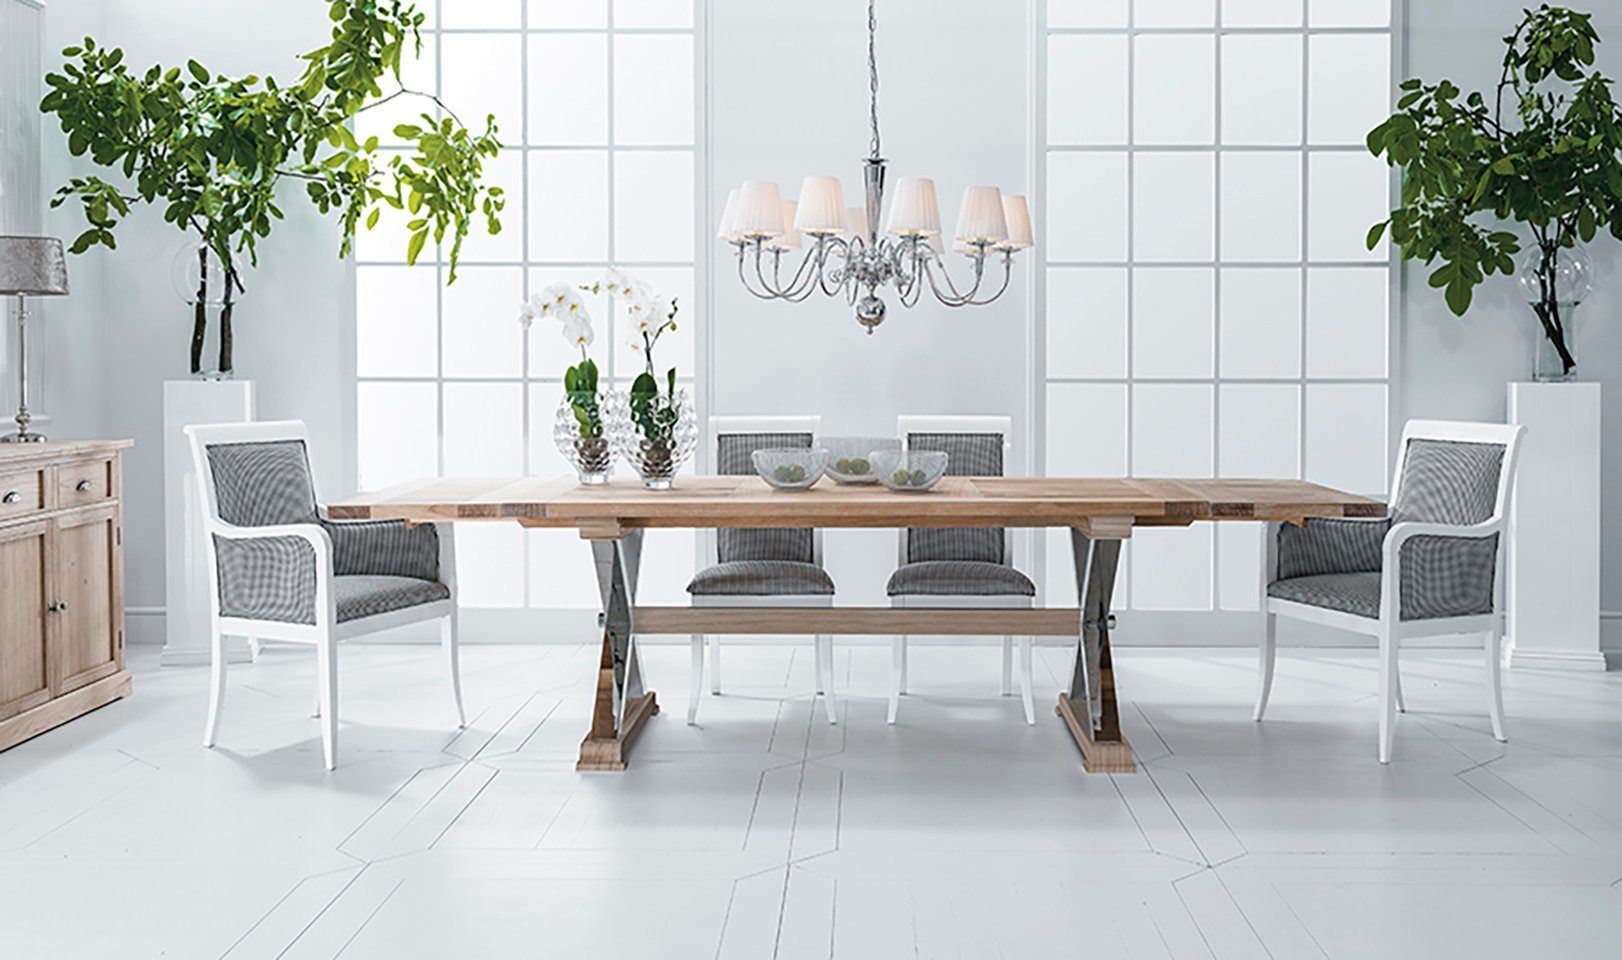 Jafra Esstisch, design klassischer tisch ausziehbarer tische neu holz esstisch wohnzimmer luxus